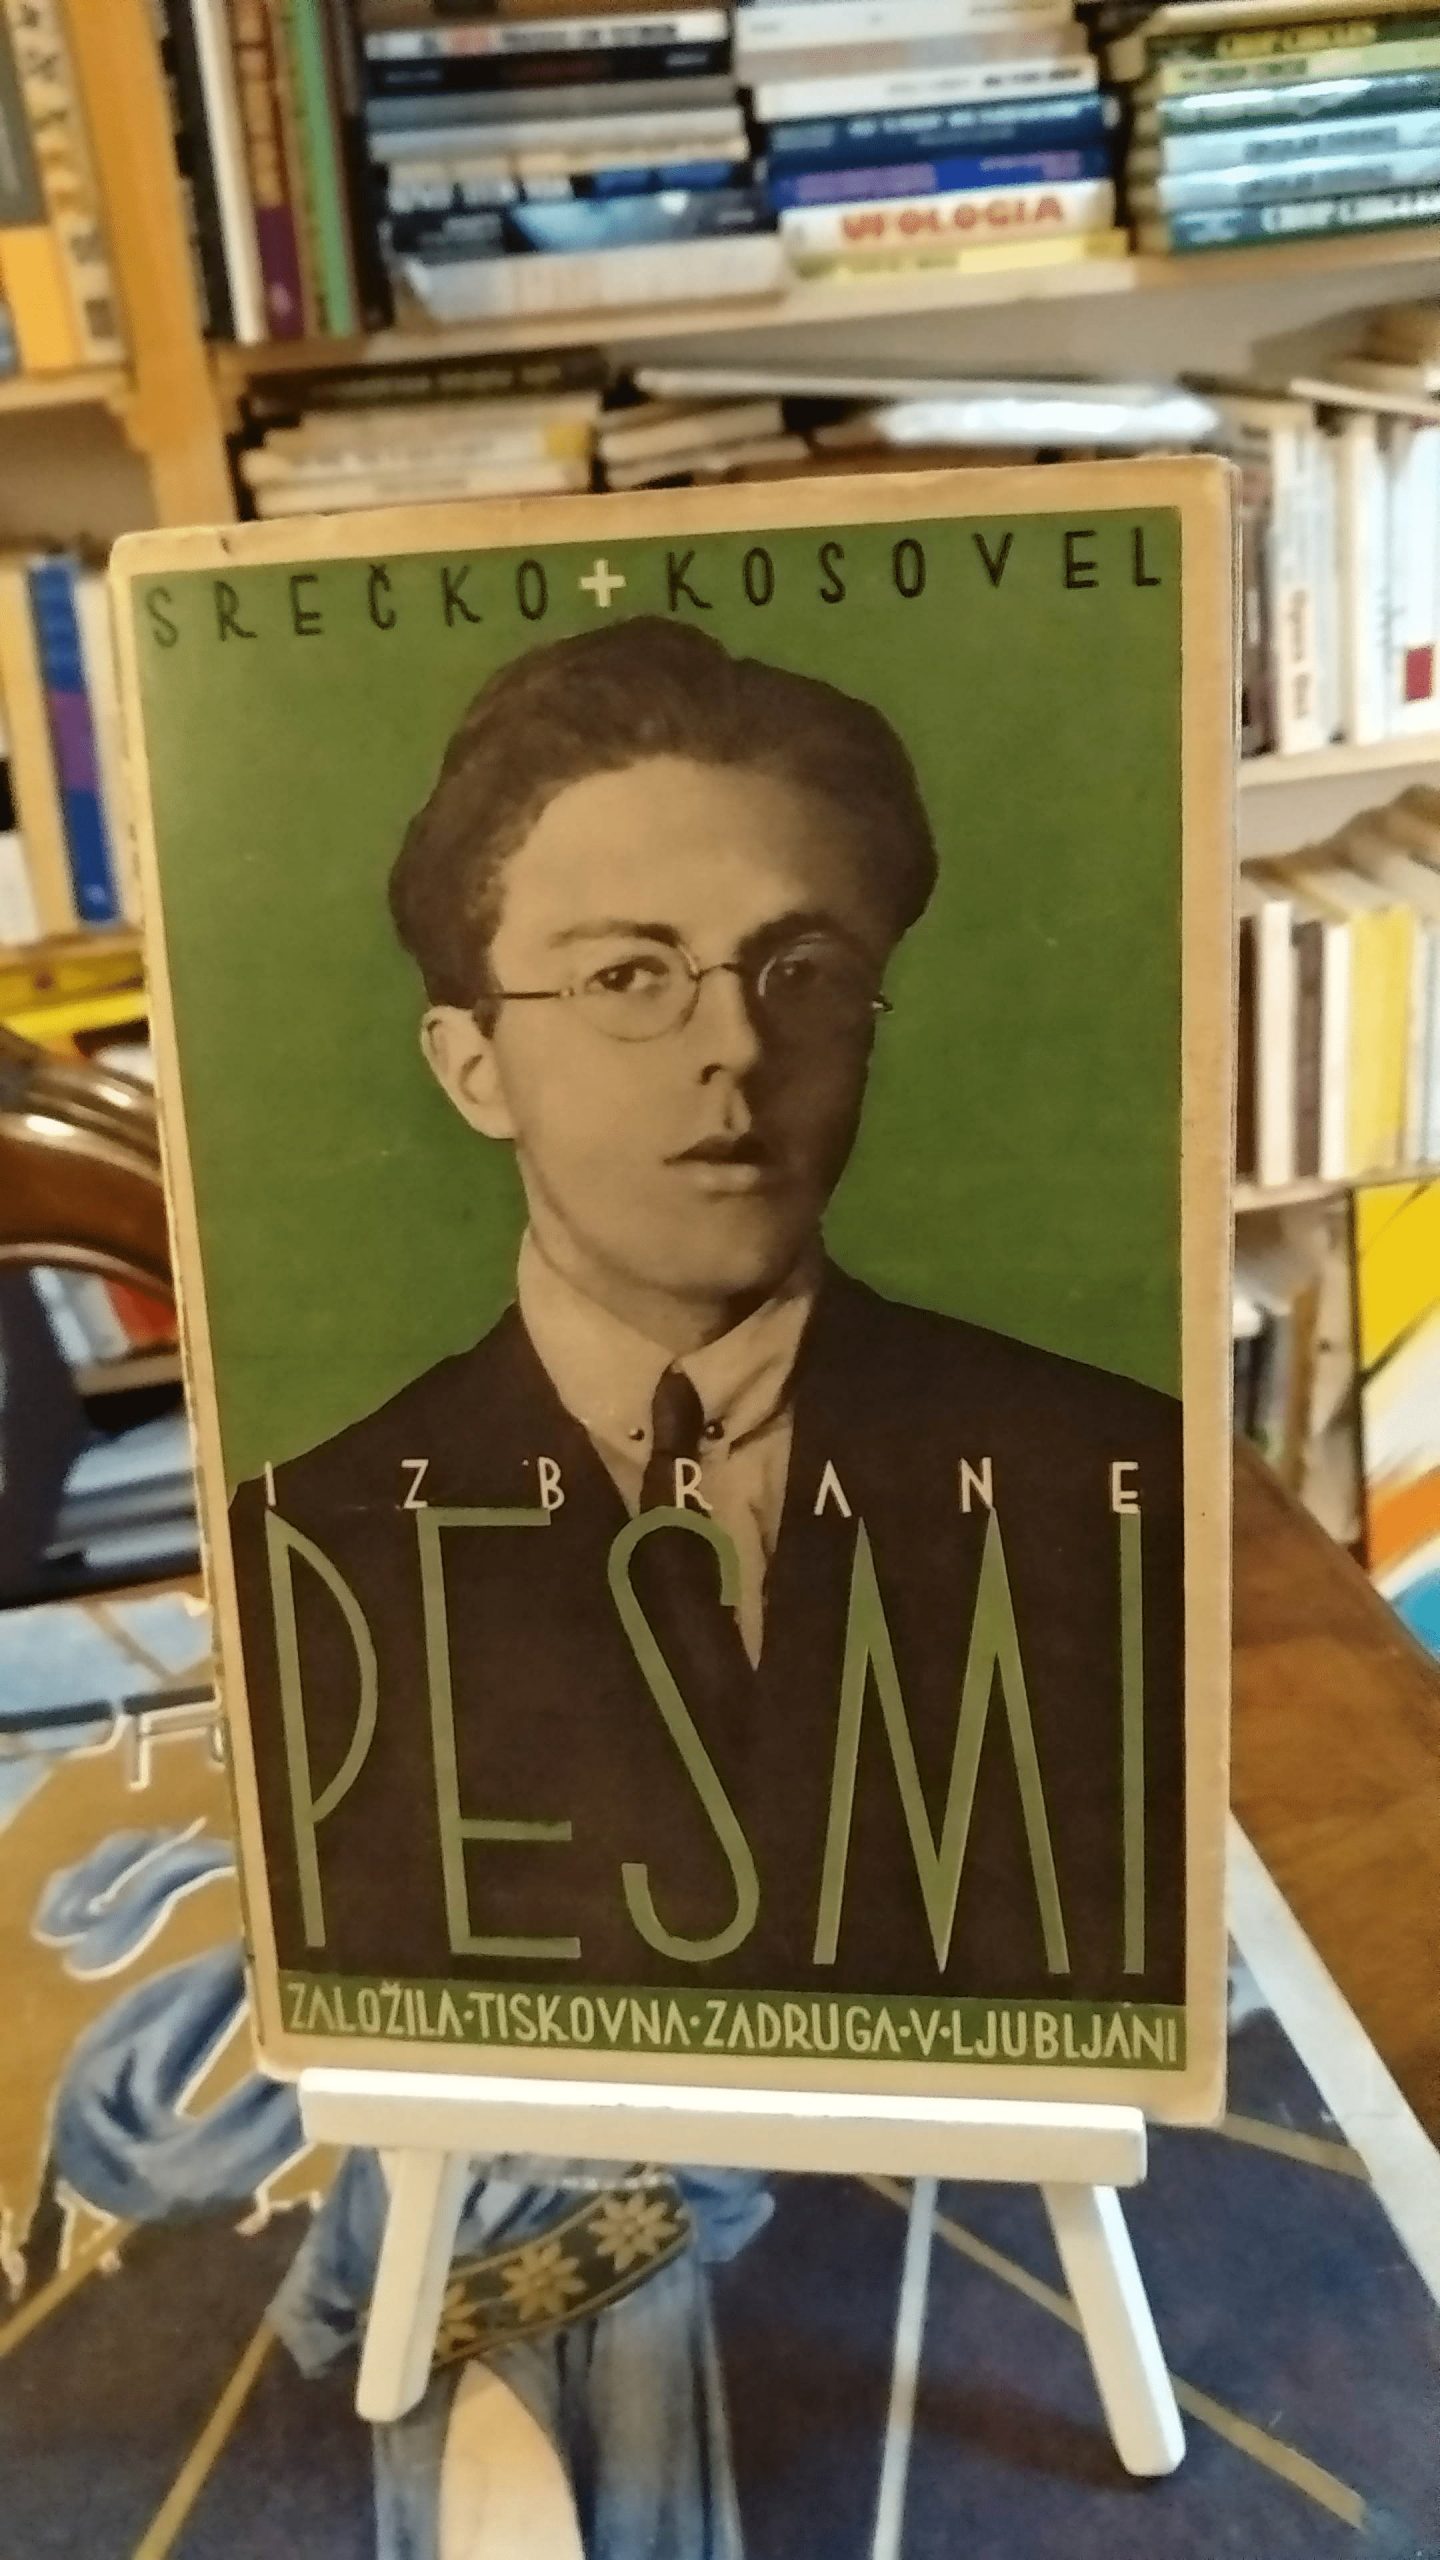 “Izbrane Pesmi” [Canzoni scelte] di Srečko Kosovel (Ljubljana 1931) 400 €